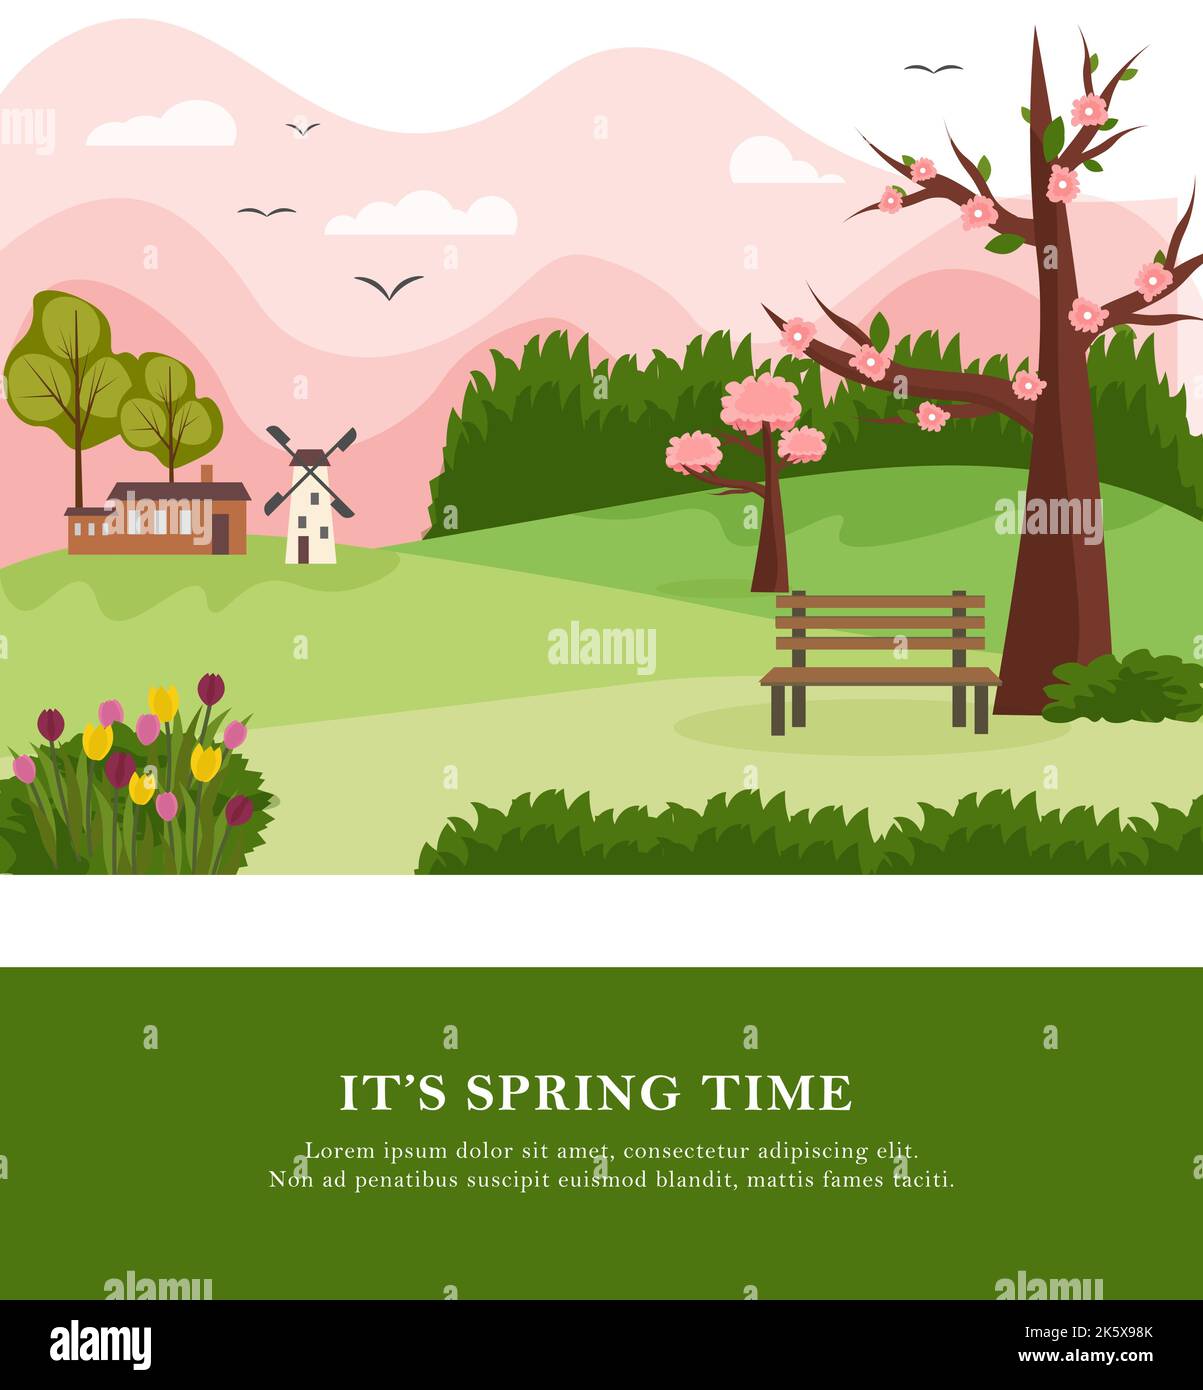 Carte postale avec paysage rural au printemps. Arbres fleuris, maison et moulin, collines et montagnes. Dessin vectoriel. Illustration de Vecteur